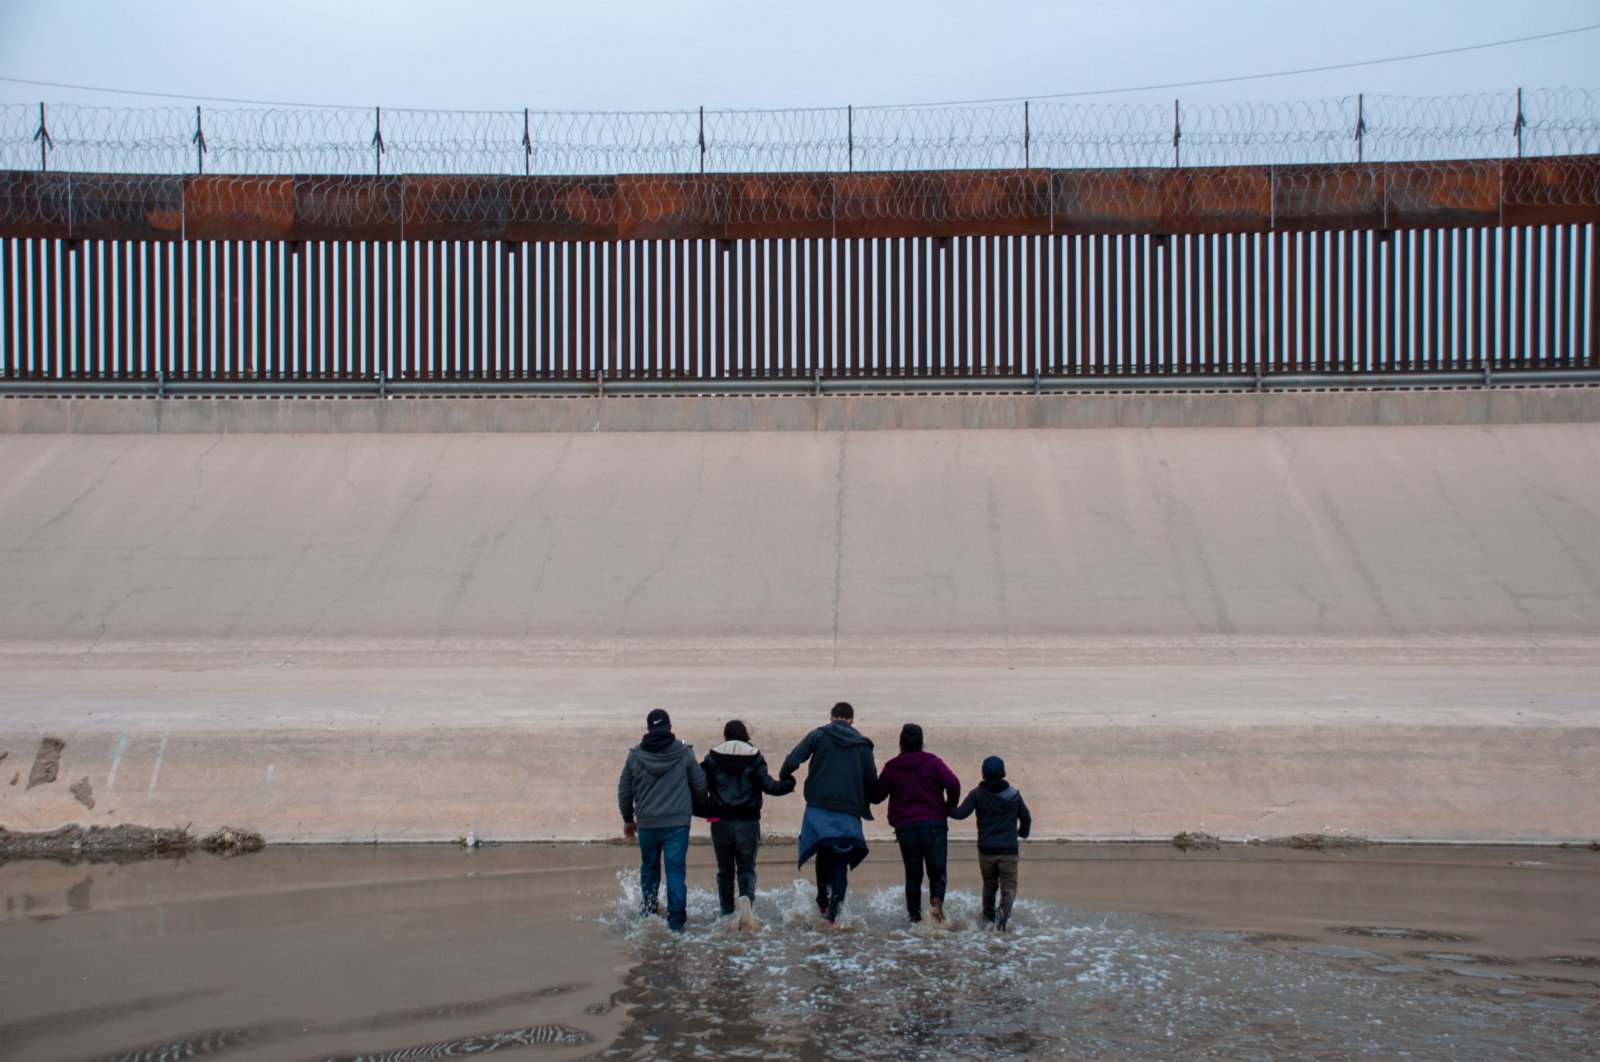 這是3月9日在墨西哥邊境城市華雷斯一側拍攝的中美洲國家移民穿過布拉沃河從墨西哥試圖進入美國的資料照片。